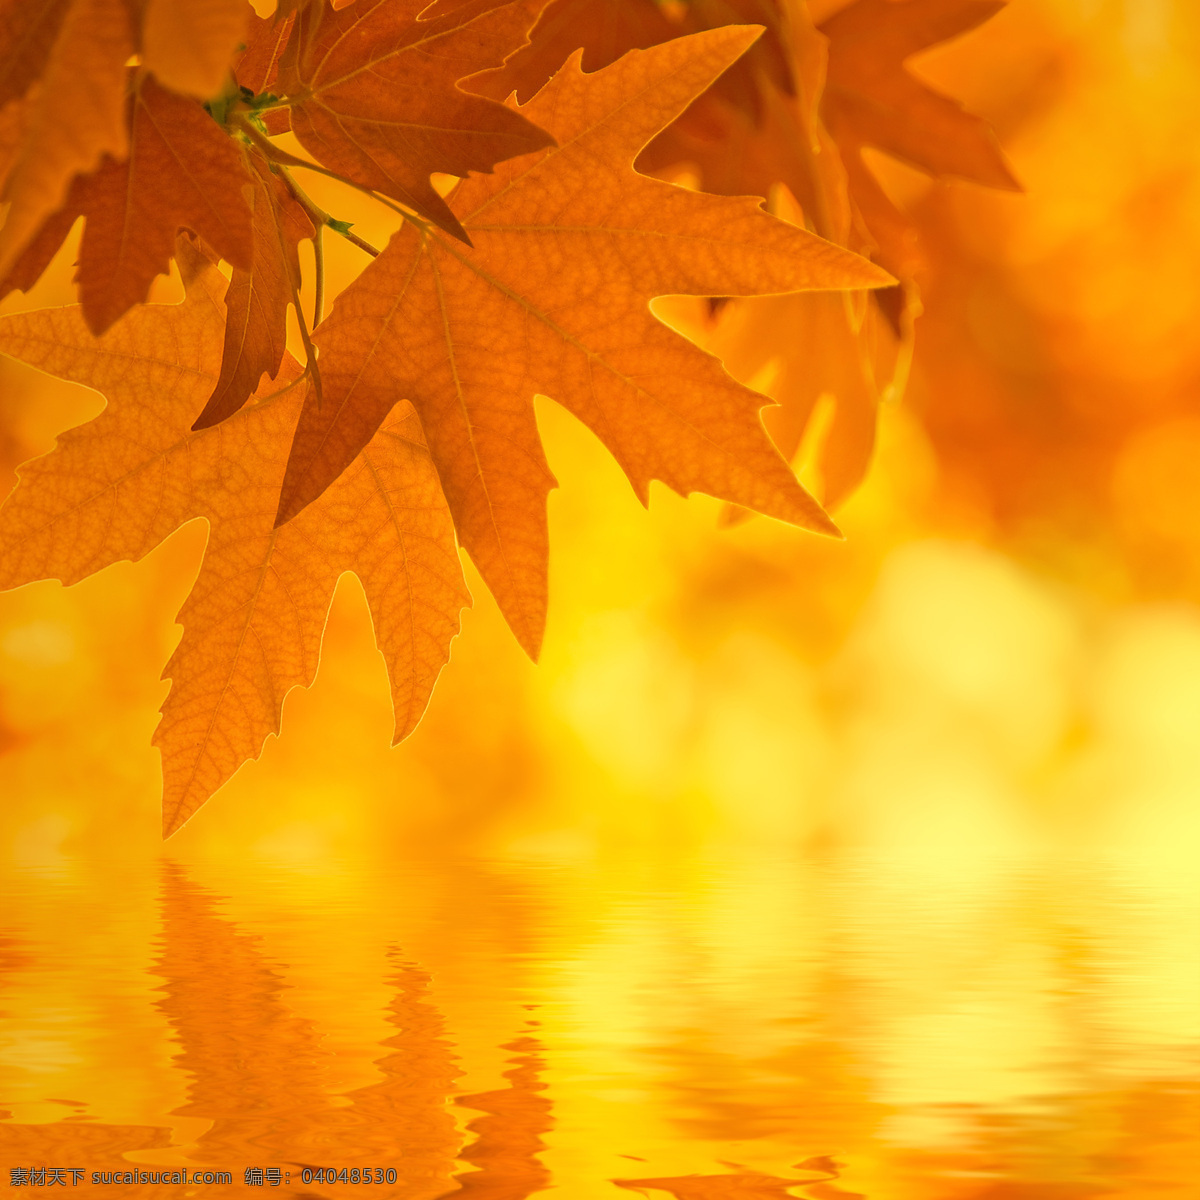 枫叶 水面 倒影 秋天树叶背景 枫叶背景 水面倒影 黄叶 叶子 梦幻光斑背景 花草树木 生物世界